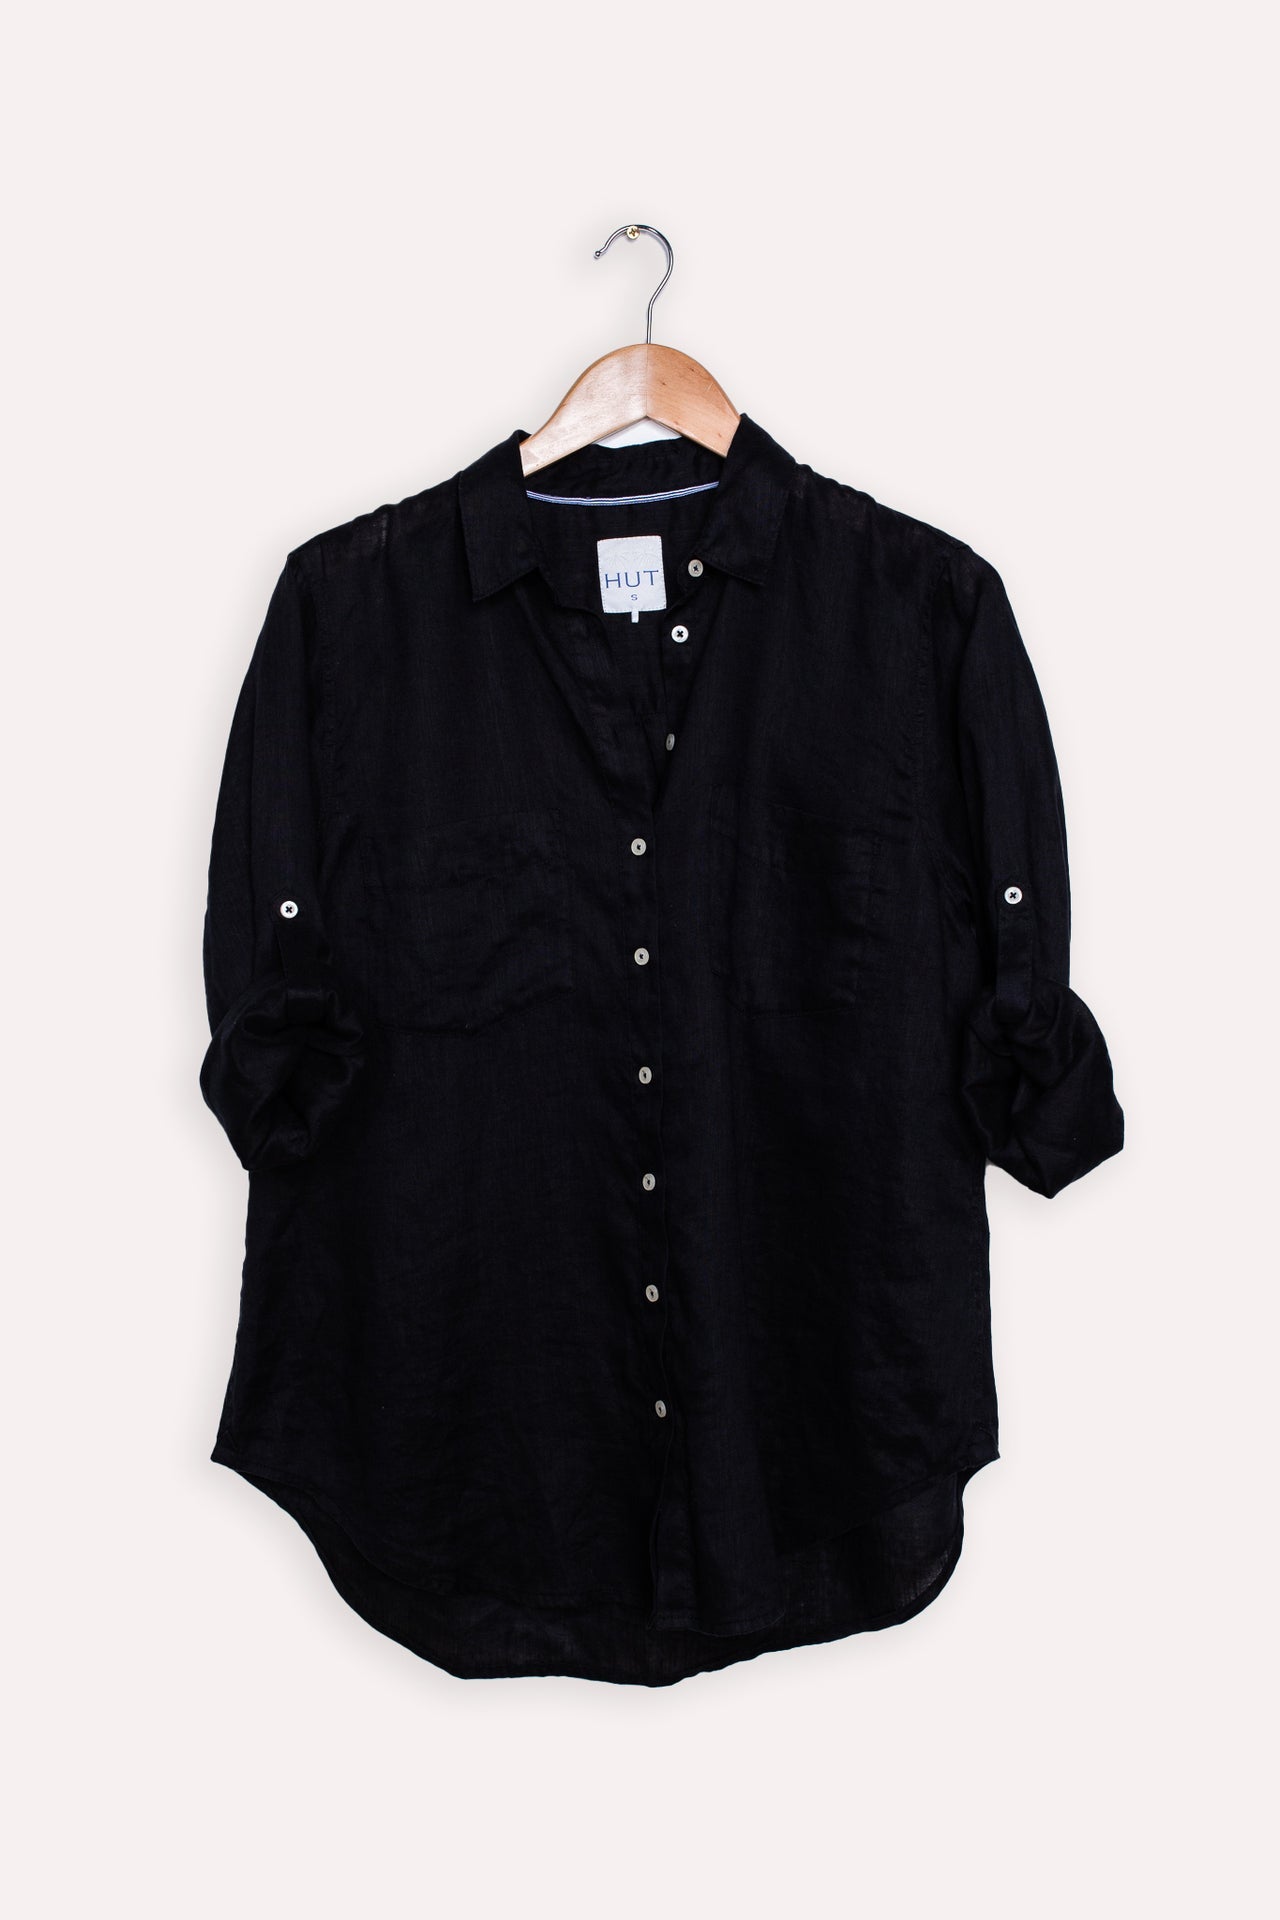 Hut Boyfriend Linen Shirt - Black